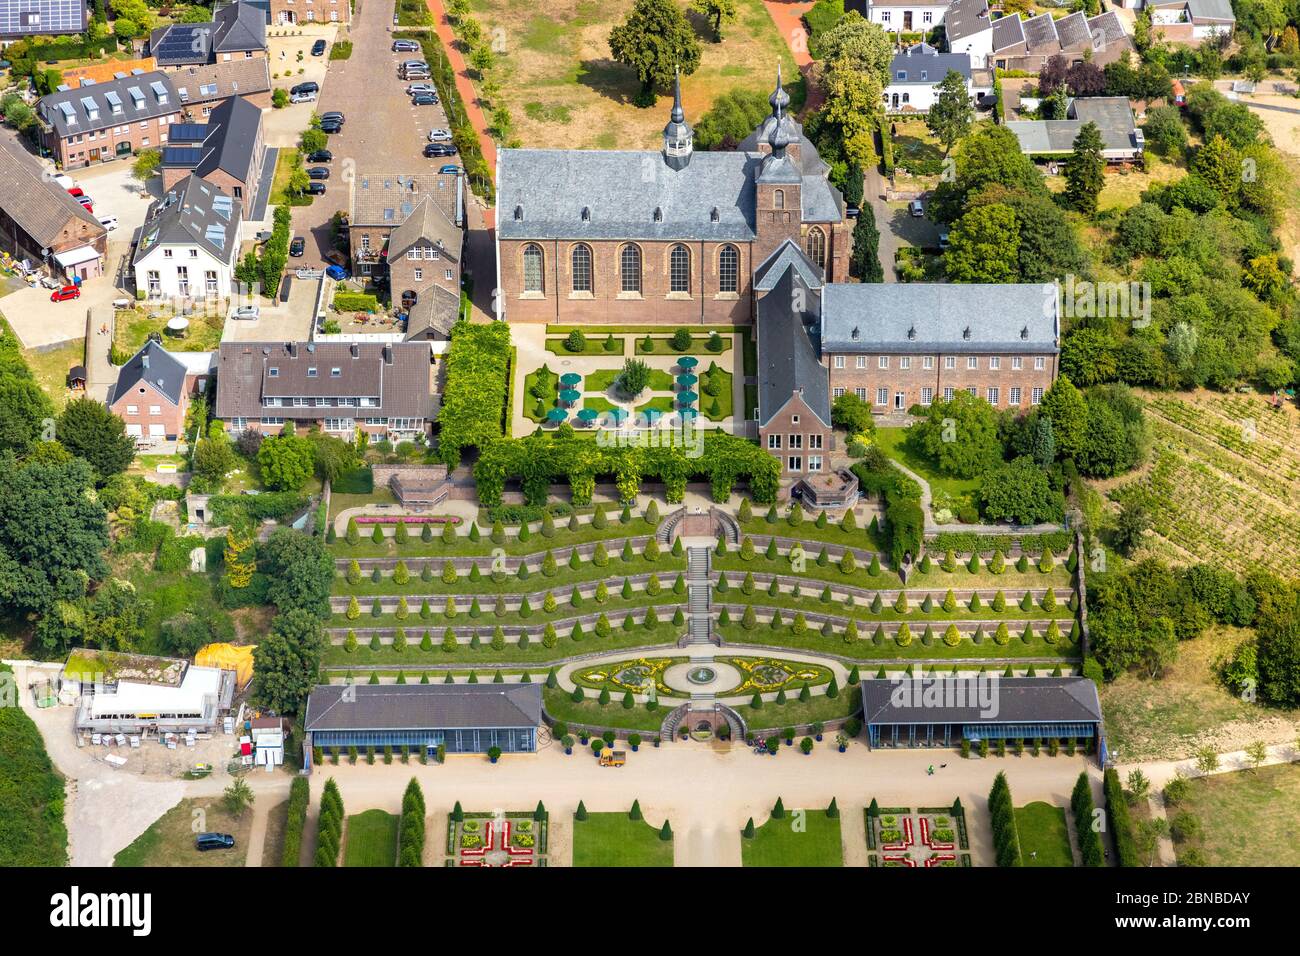 Monastère de Kamp avec terrasse de jardins, Landesgartenschau 2020, spectacle horticole d'état, vue aérienne, Allemagne, Rhénanie-du-Nord-Westphalie, région de la Ruhr, Kamp-Lintfort Banque D'Images